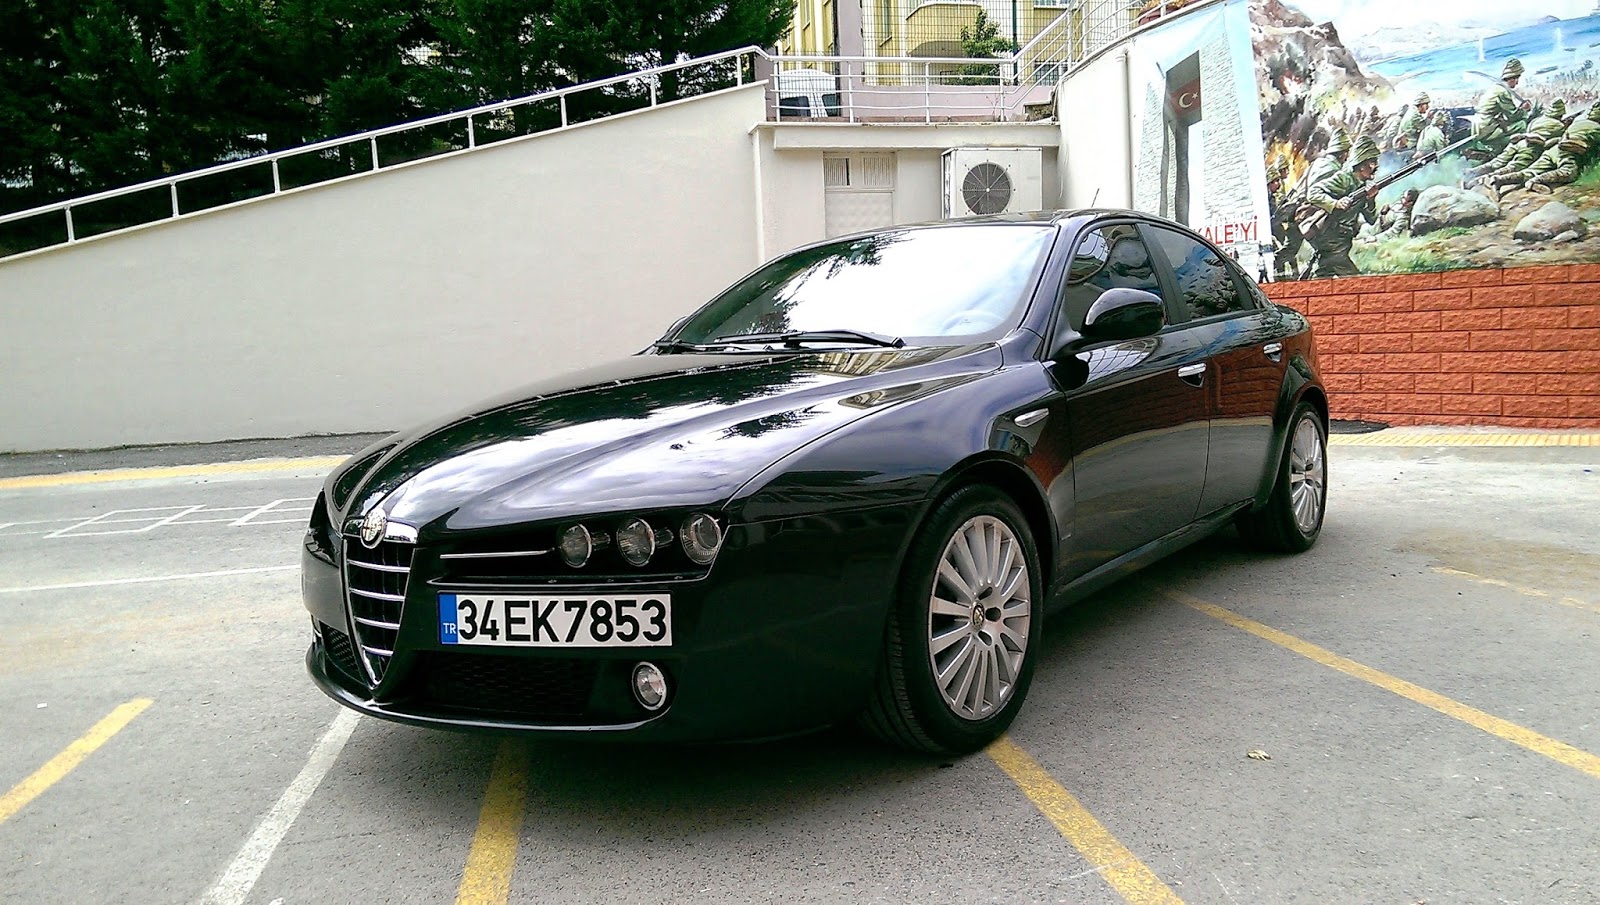 Alfa Romeo 159 Fiyatları & Modelleri 'da